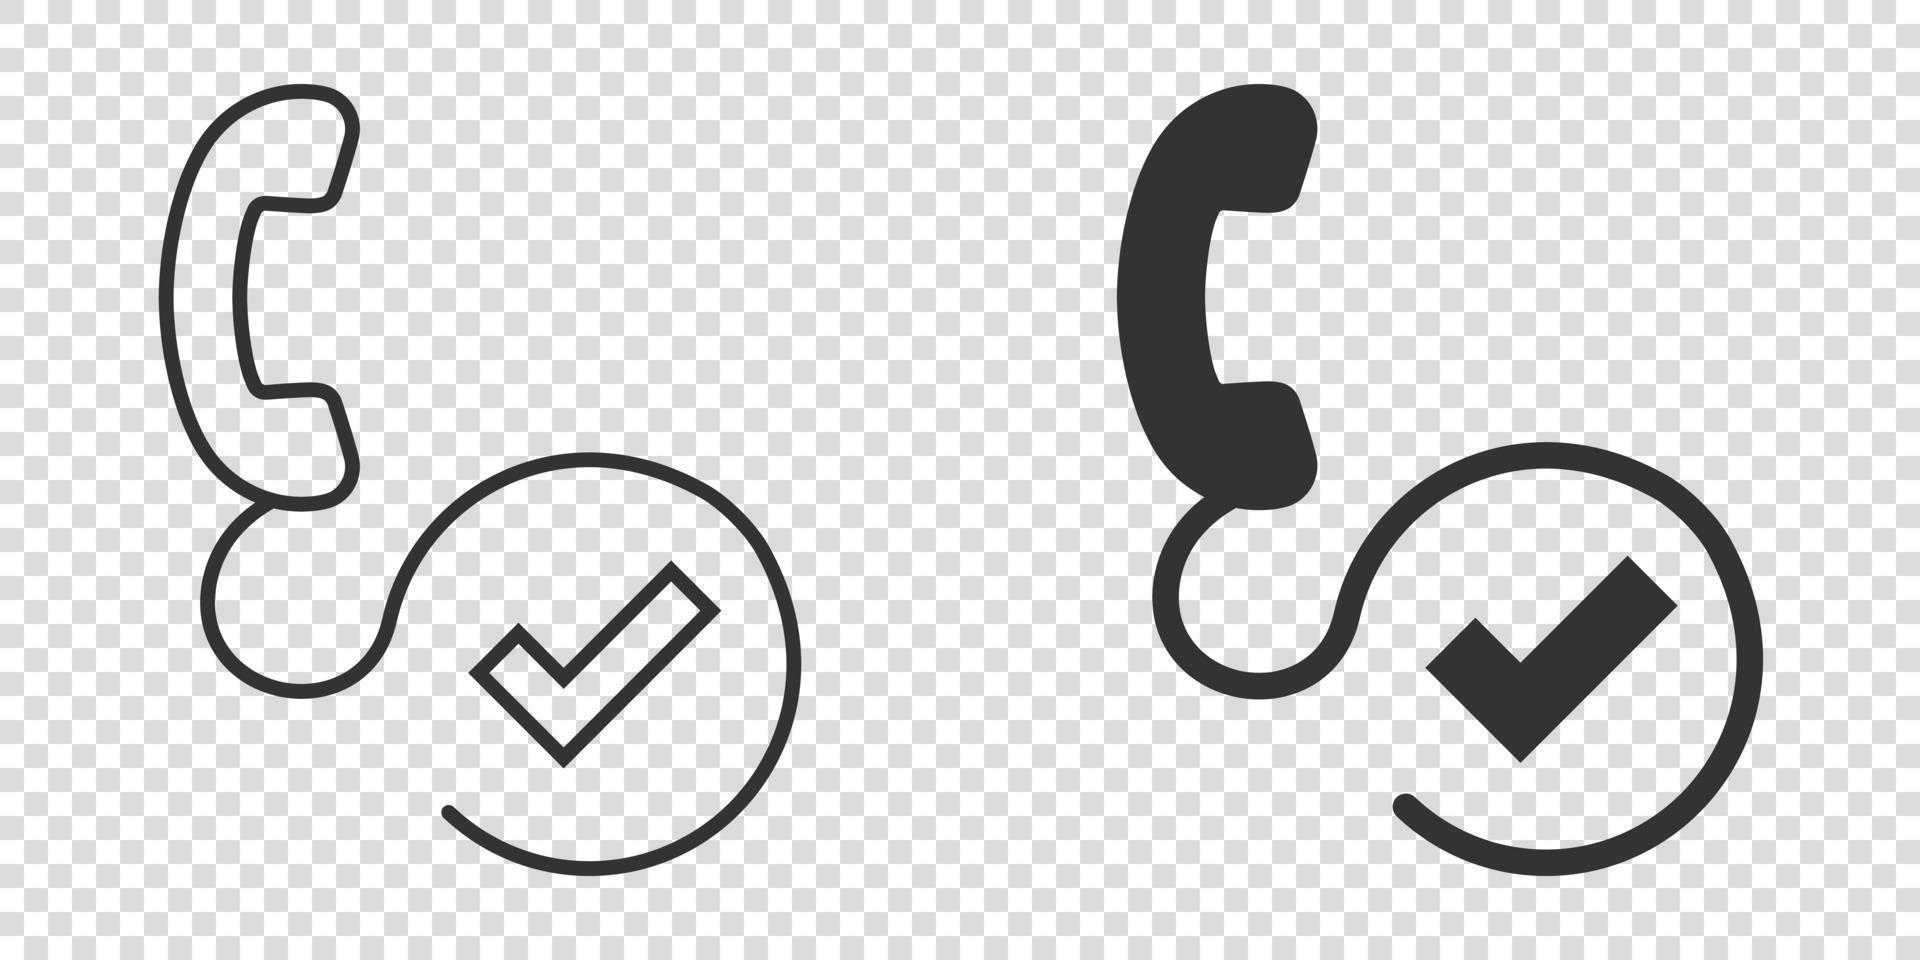 icono de marca de verificación de teléfono en estilo plano. ilustración de vector de aprobación de teléfono inteligente sobre fondo blanco aislado. confirmar el concepto de negocio.